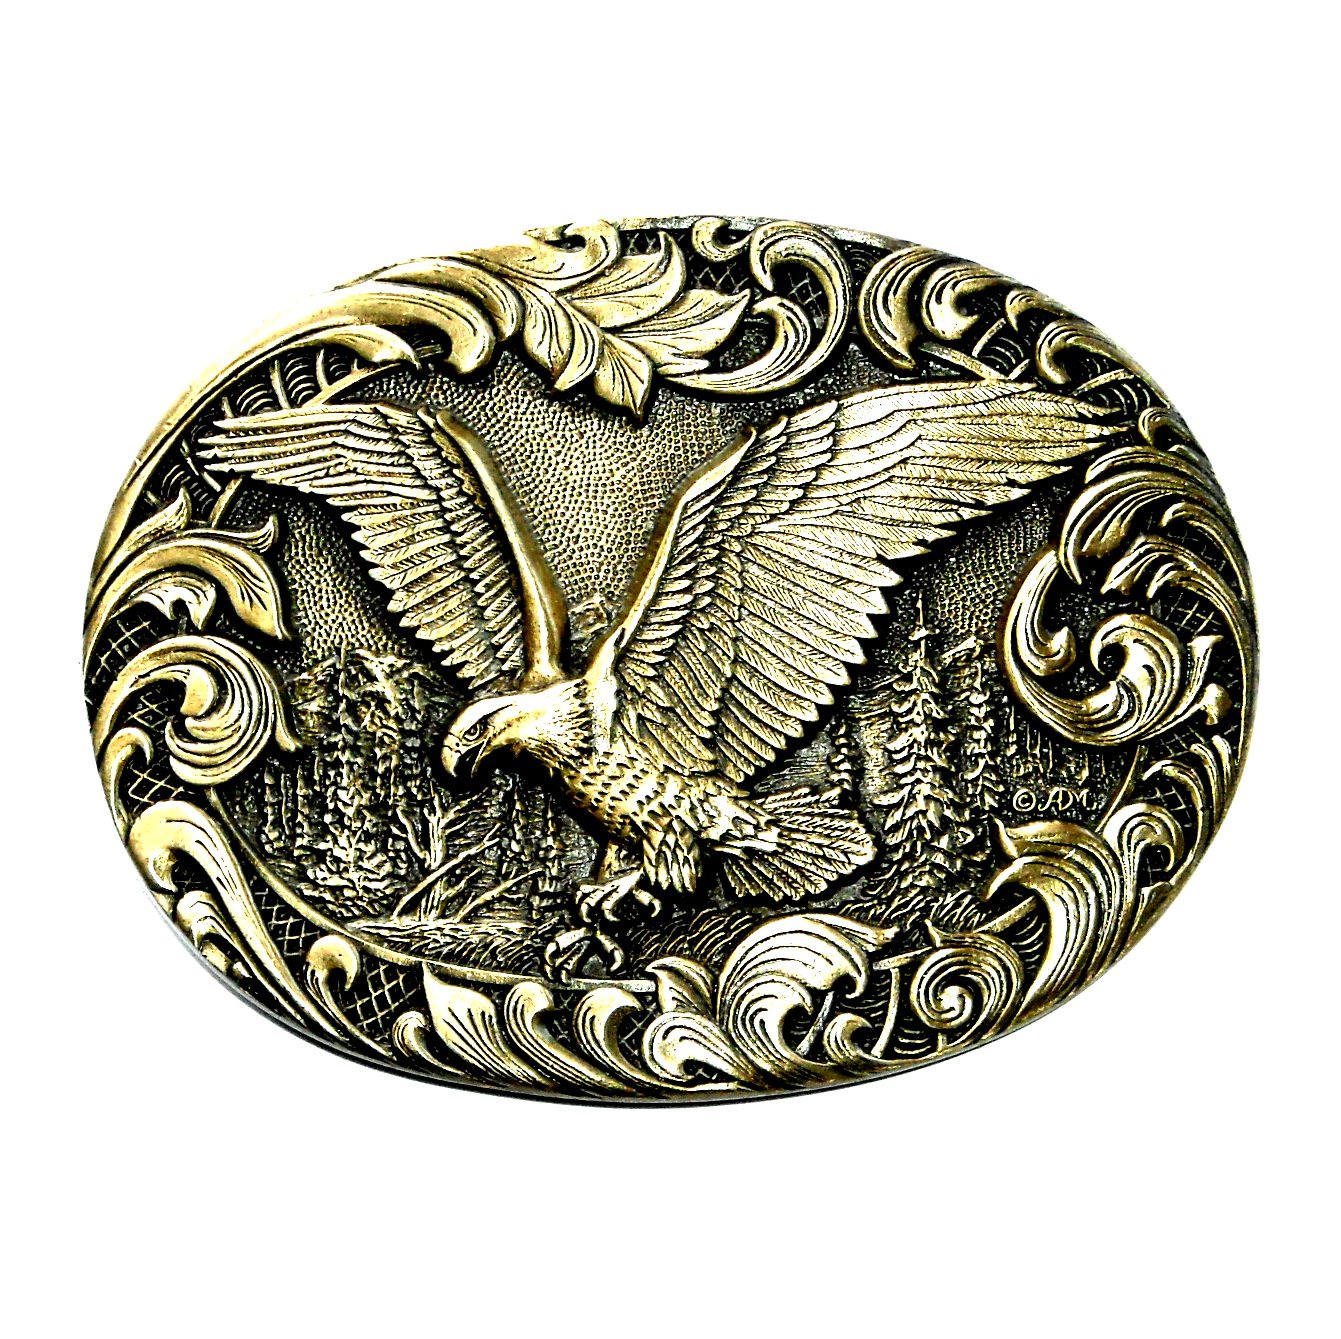 American Eagle Award Design Solid Brass Belt Buckle